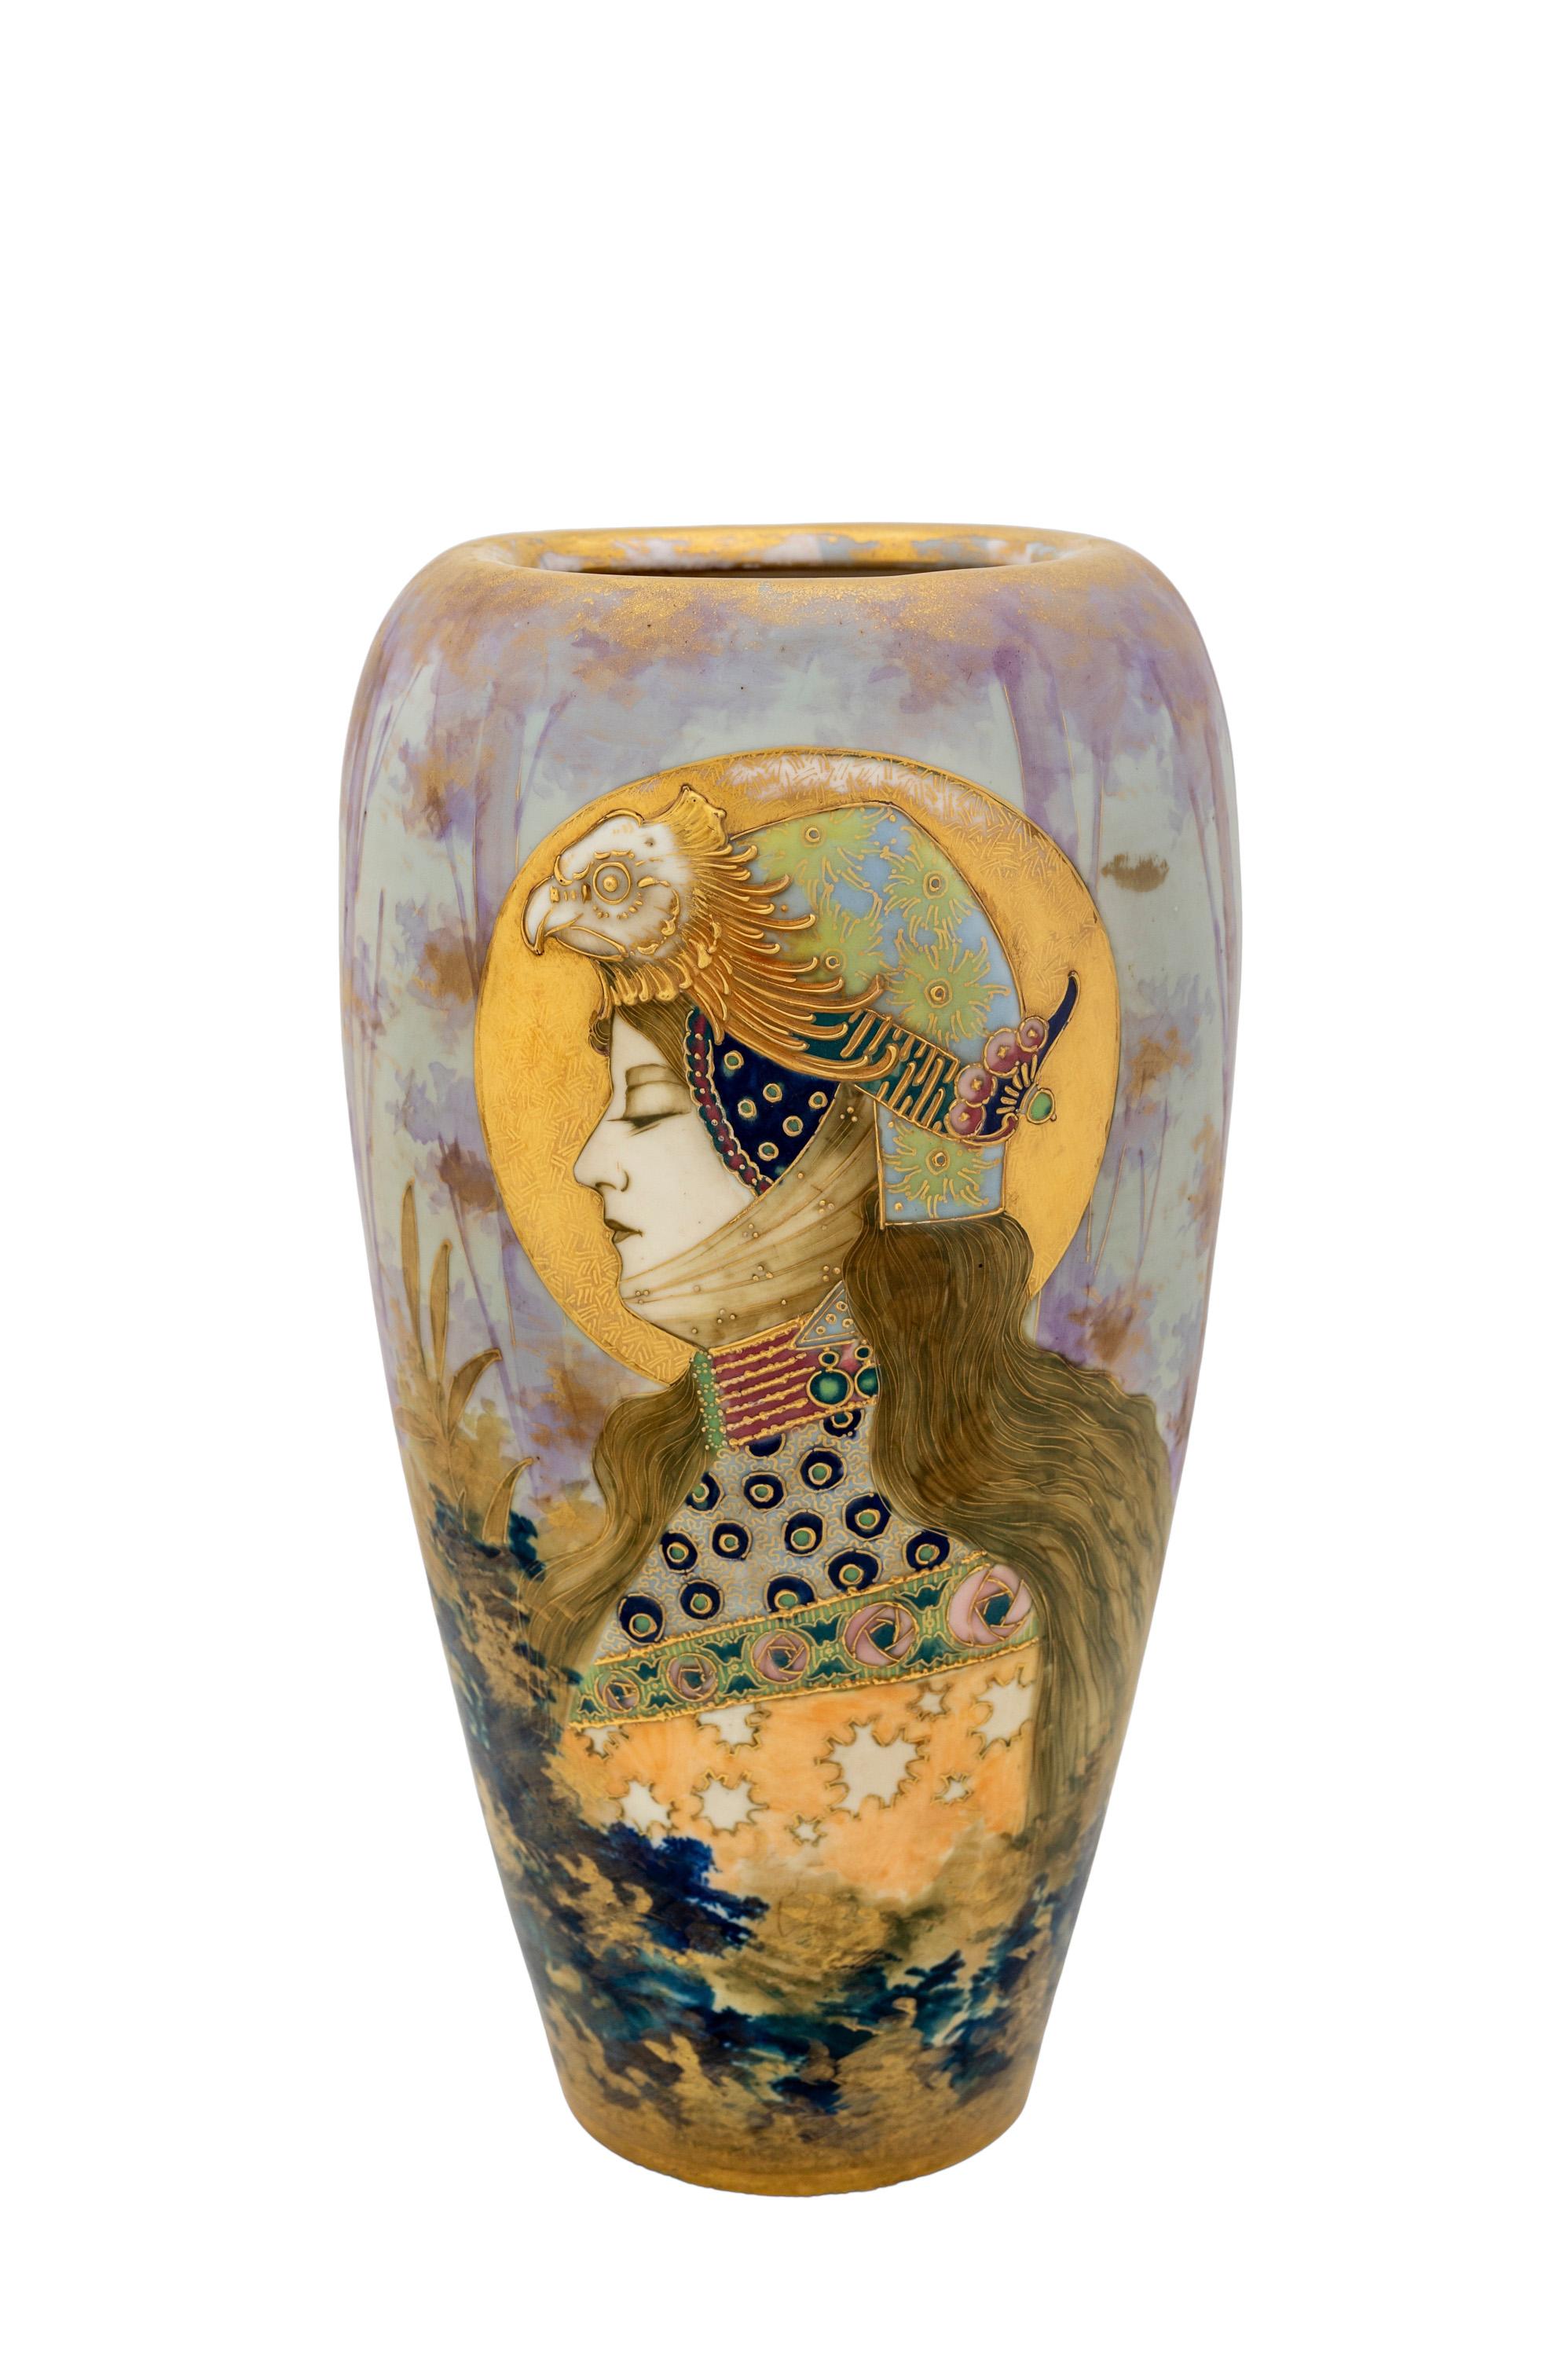 Vase portrait autrichien Art Nouveau en céramique fabriqué par Amphora-Werke Riessner, Stellmacher & Kessel Turn-Teplitz circa 1899 

Vase portrait en céramique Art nouveau autrichien 